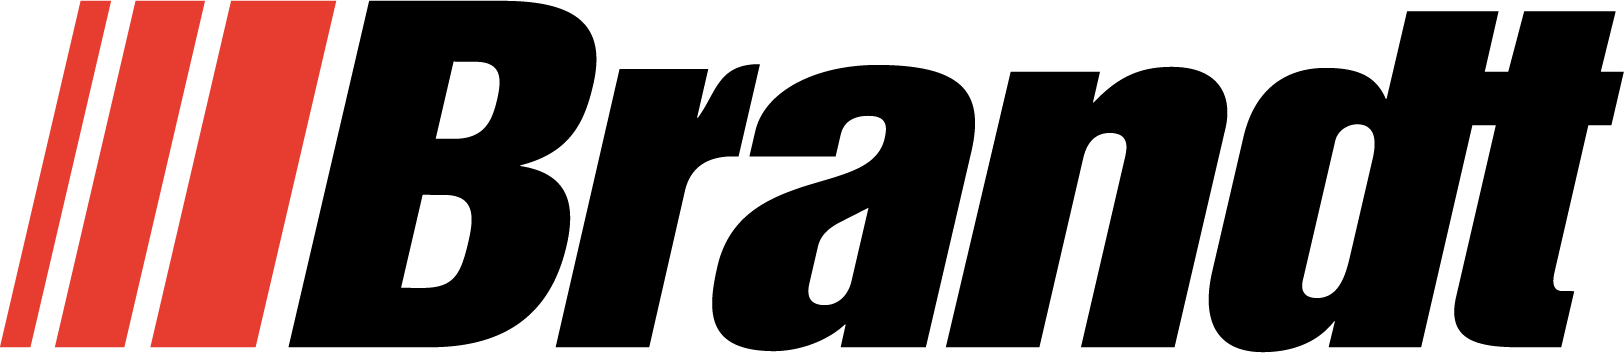 Brandt-Logo black.png